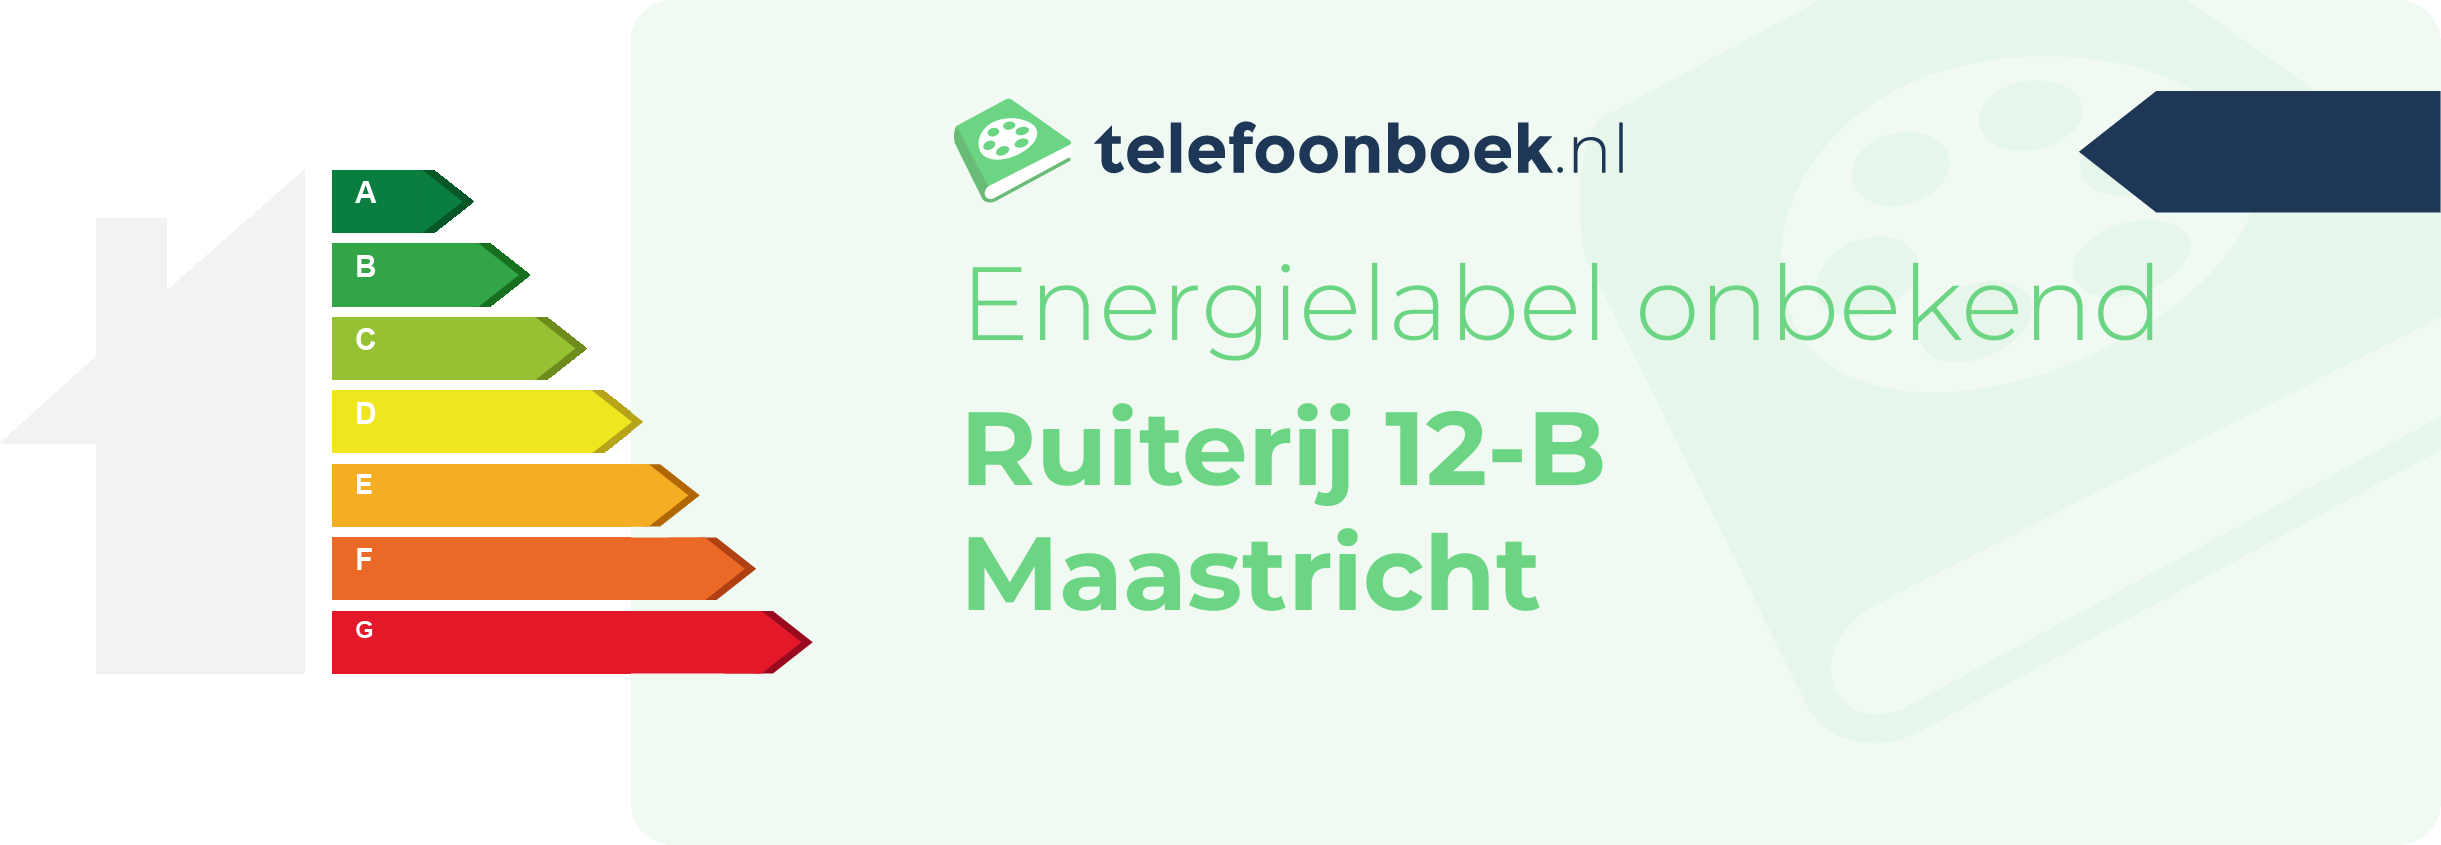 Energielabel Ruiterij 12-B Maastricht